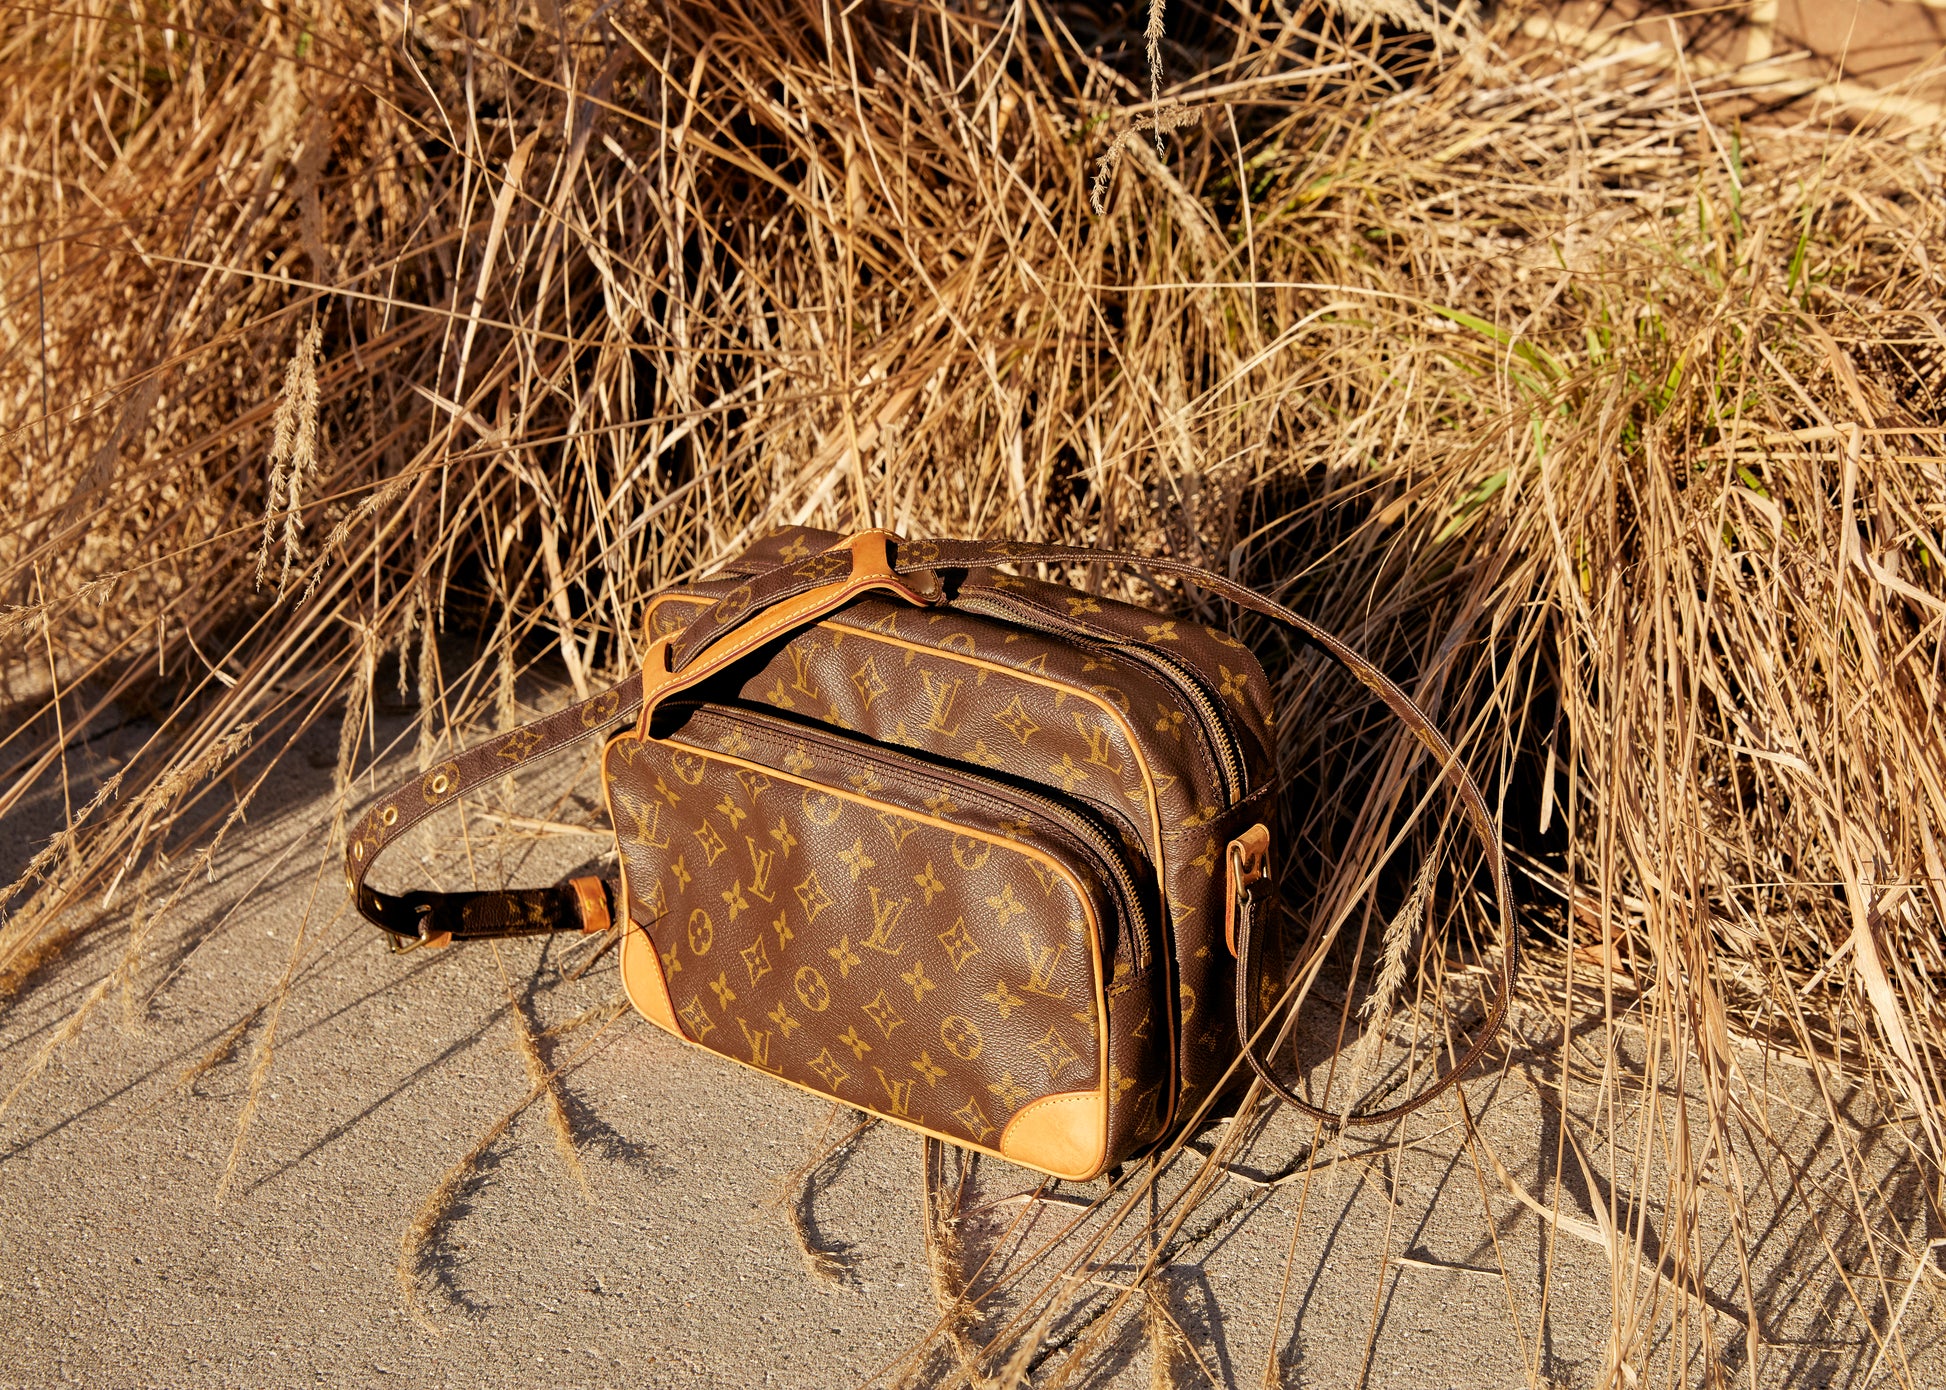 Louis Vuitton Nile Handbag 268012